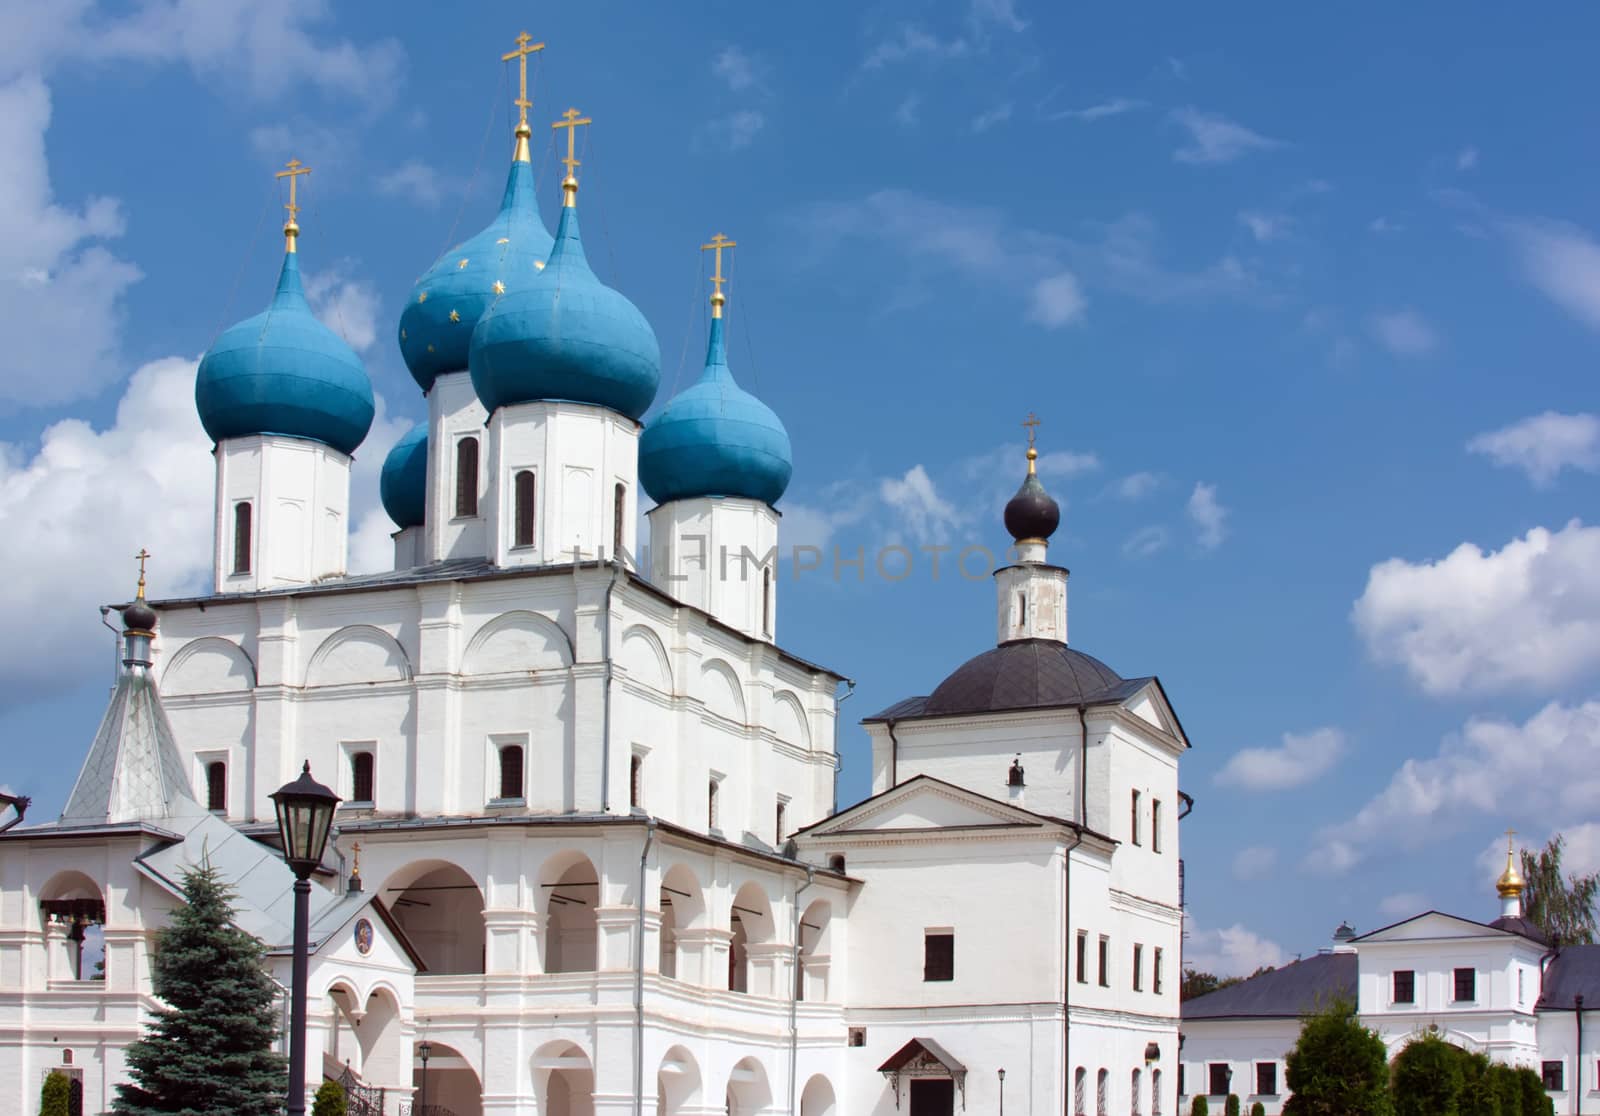 Vysotsky Monastery, Serpukhov, Russia by borisb17